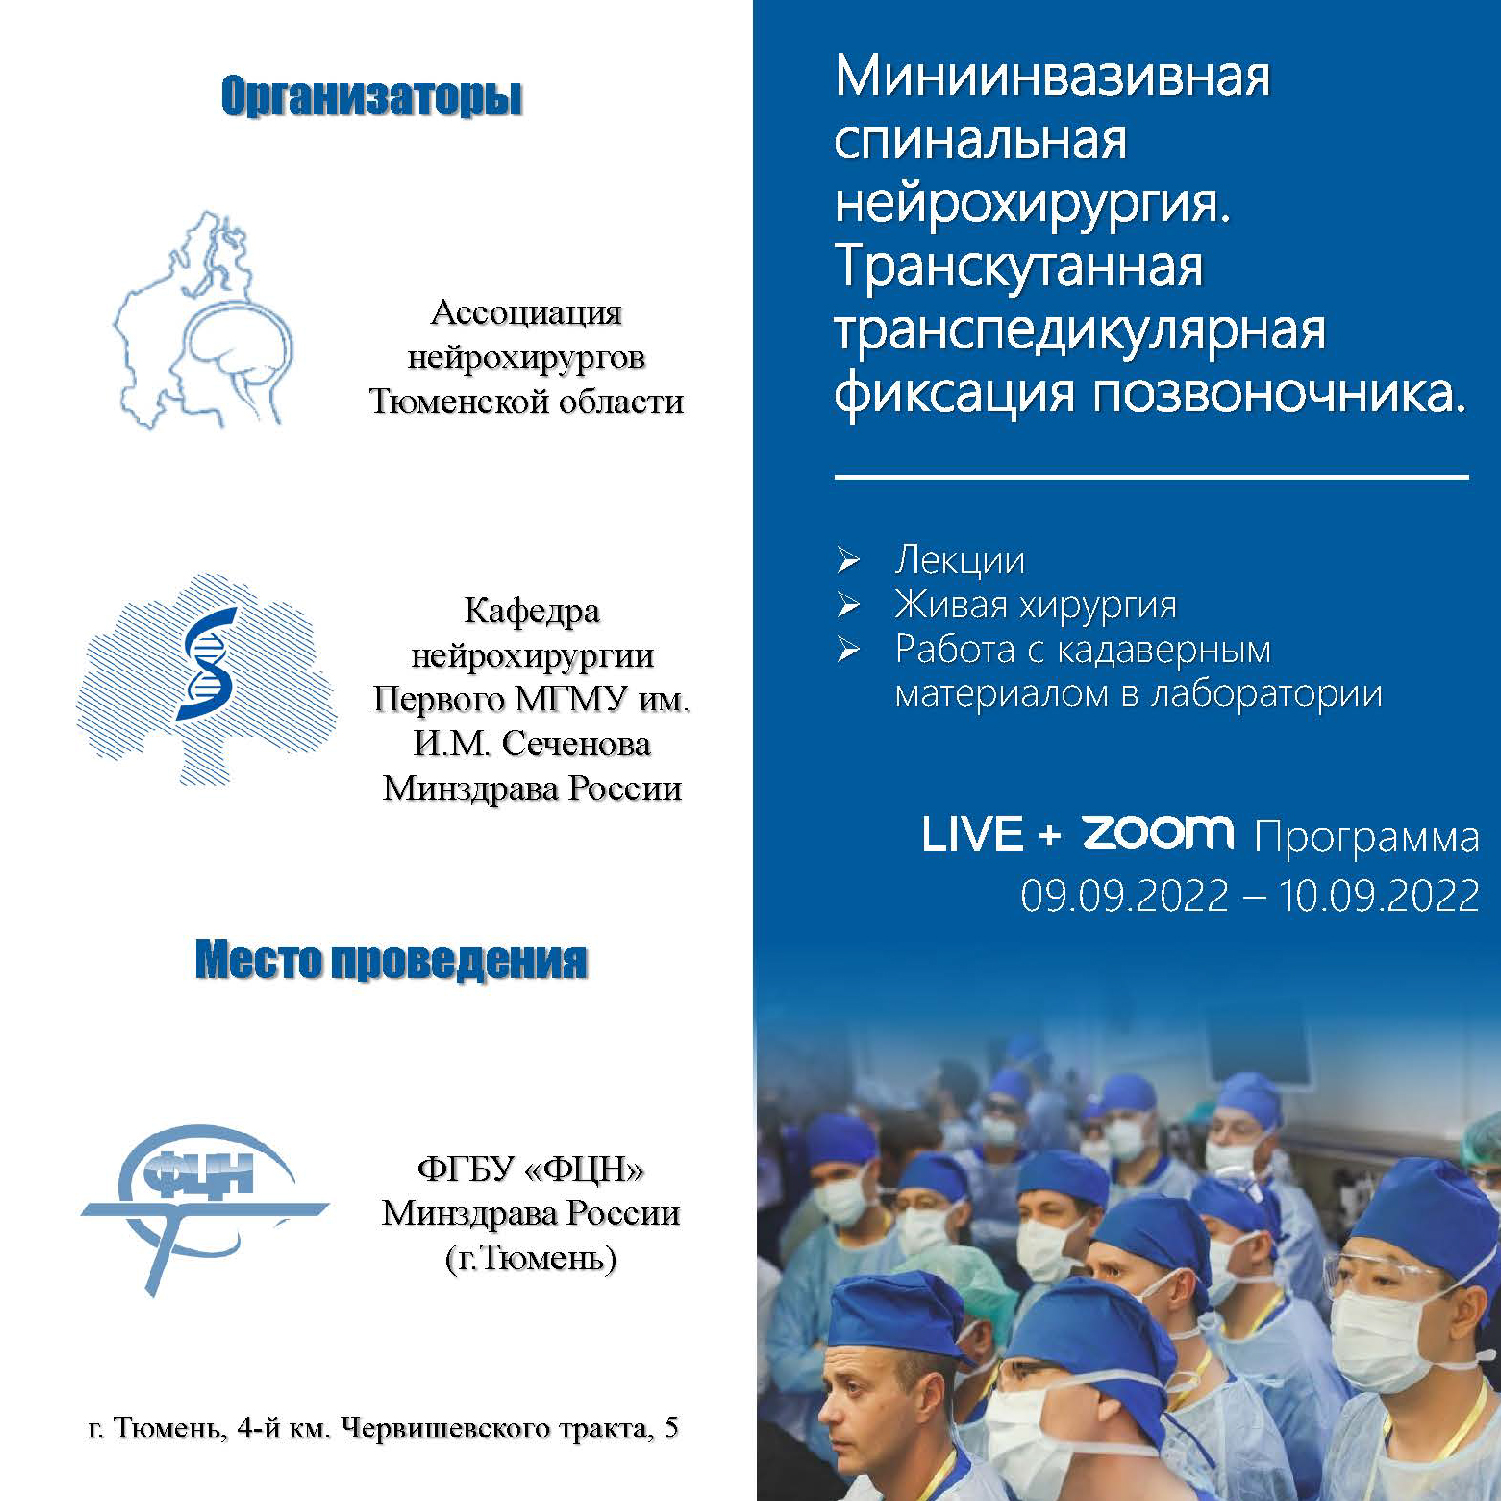 Миниинвазивная спинальная нейрохирургия. Транскутанная транспедикулярная фиксация позвоночника - тема конференции, которая пройдёт в Федеральный центре нейрохирургии Тюмени с 9 по 10 сентября 2022 года